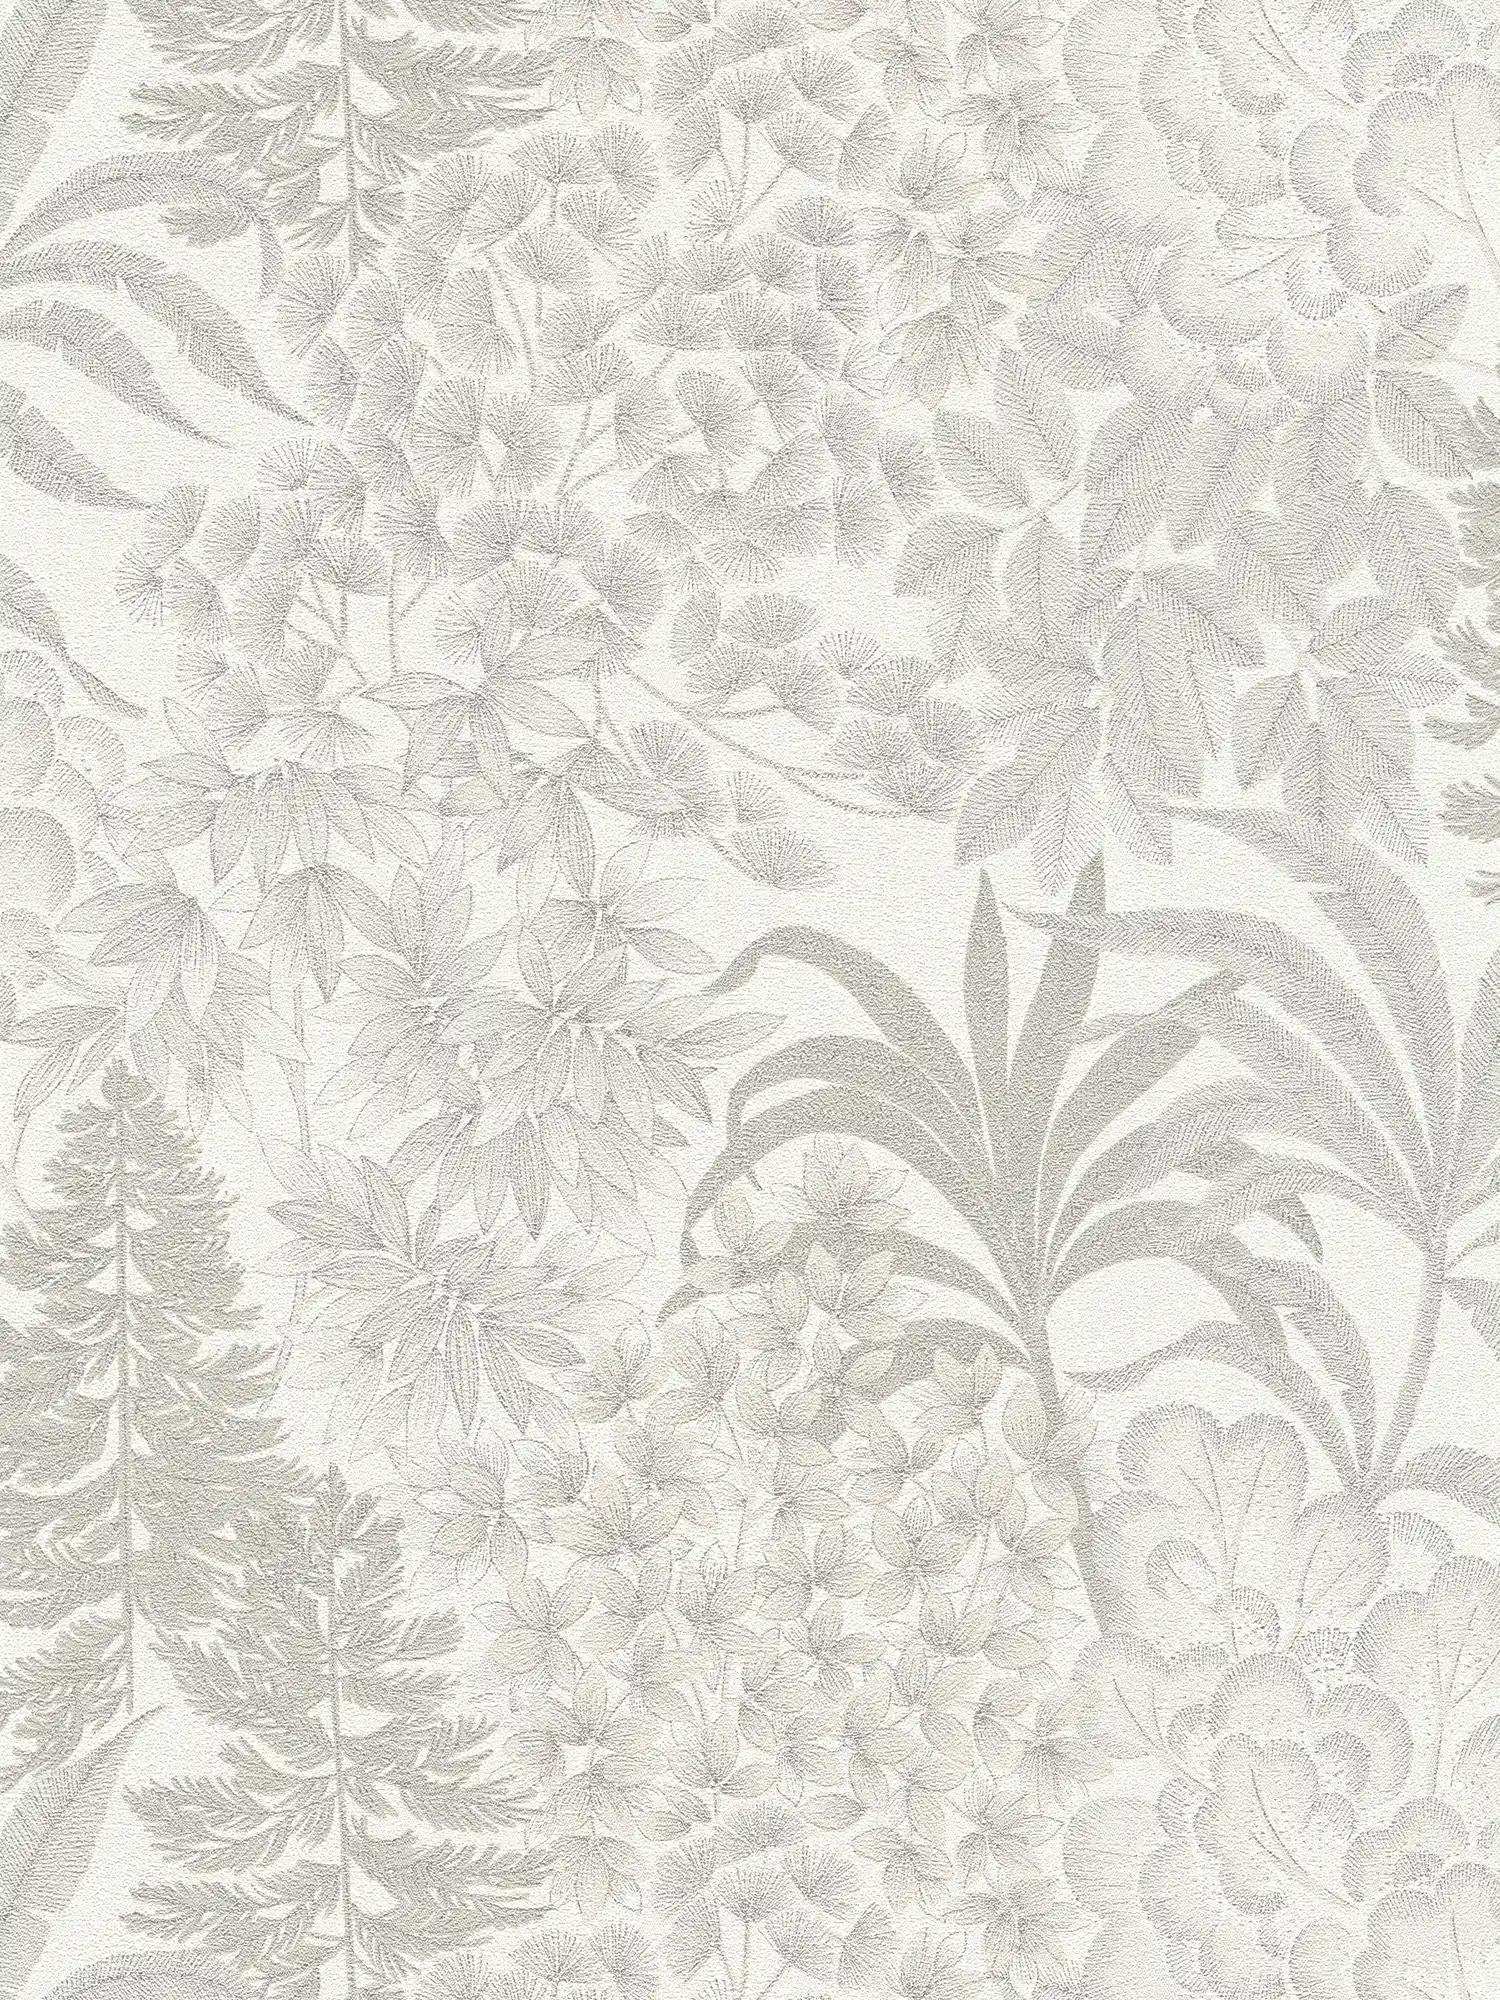 Licht glanzend bloemenbehang in een subtiele kleur - wit, grijs, zilver
